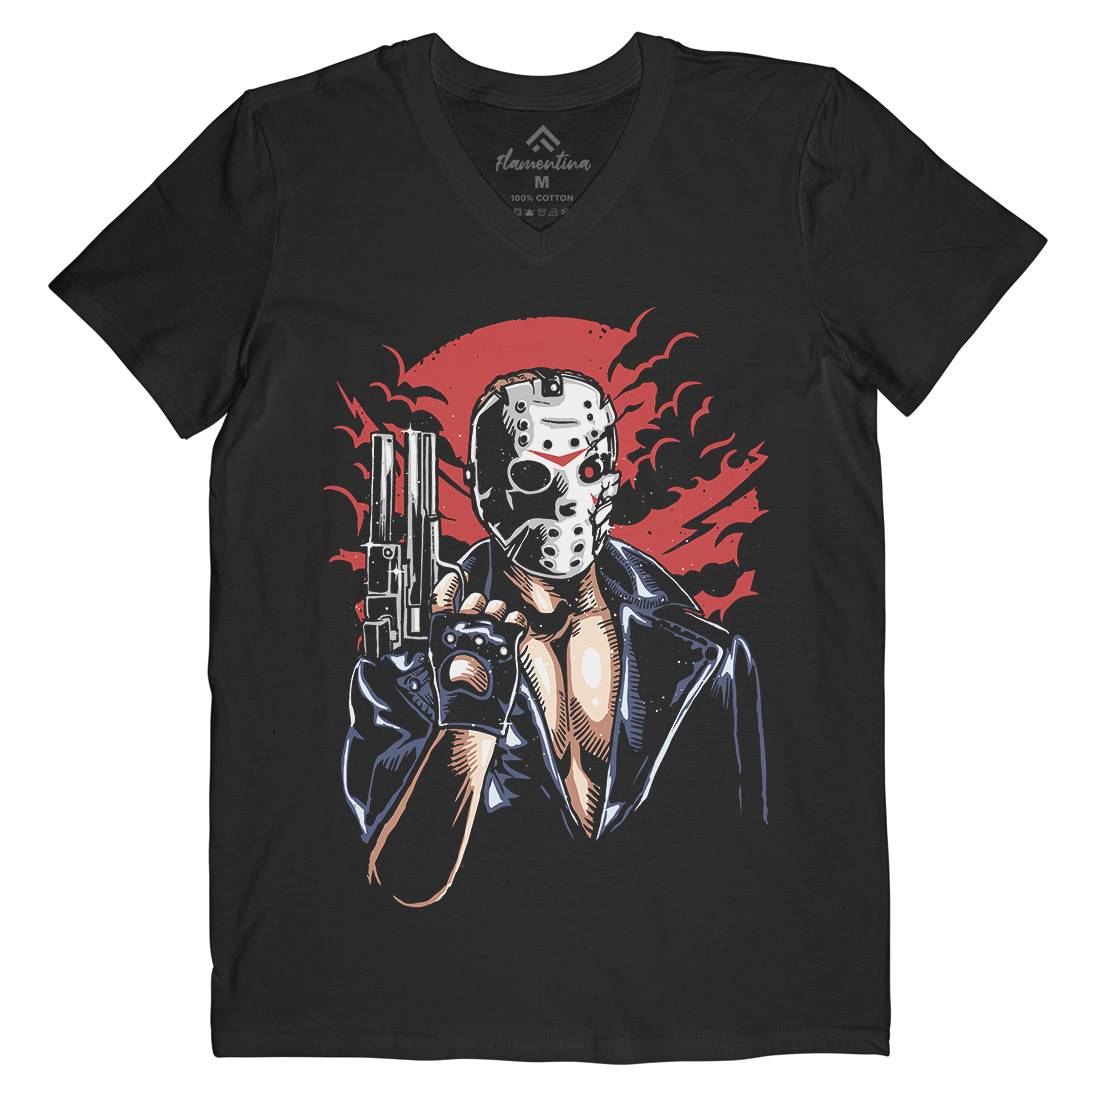 Jason Mens V-Neck T-Shirt Horror A548